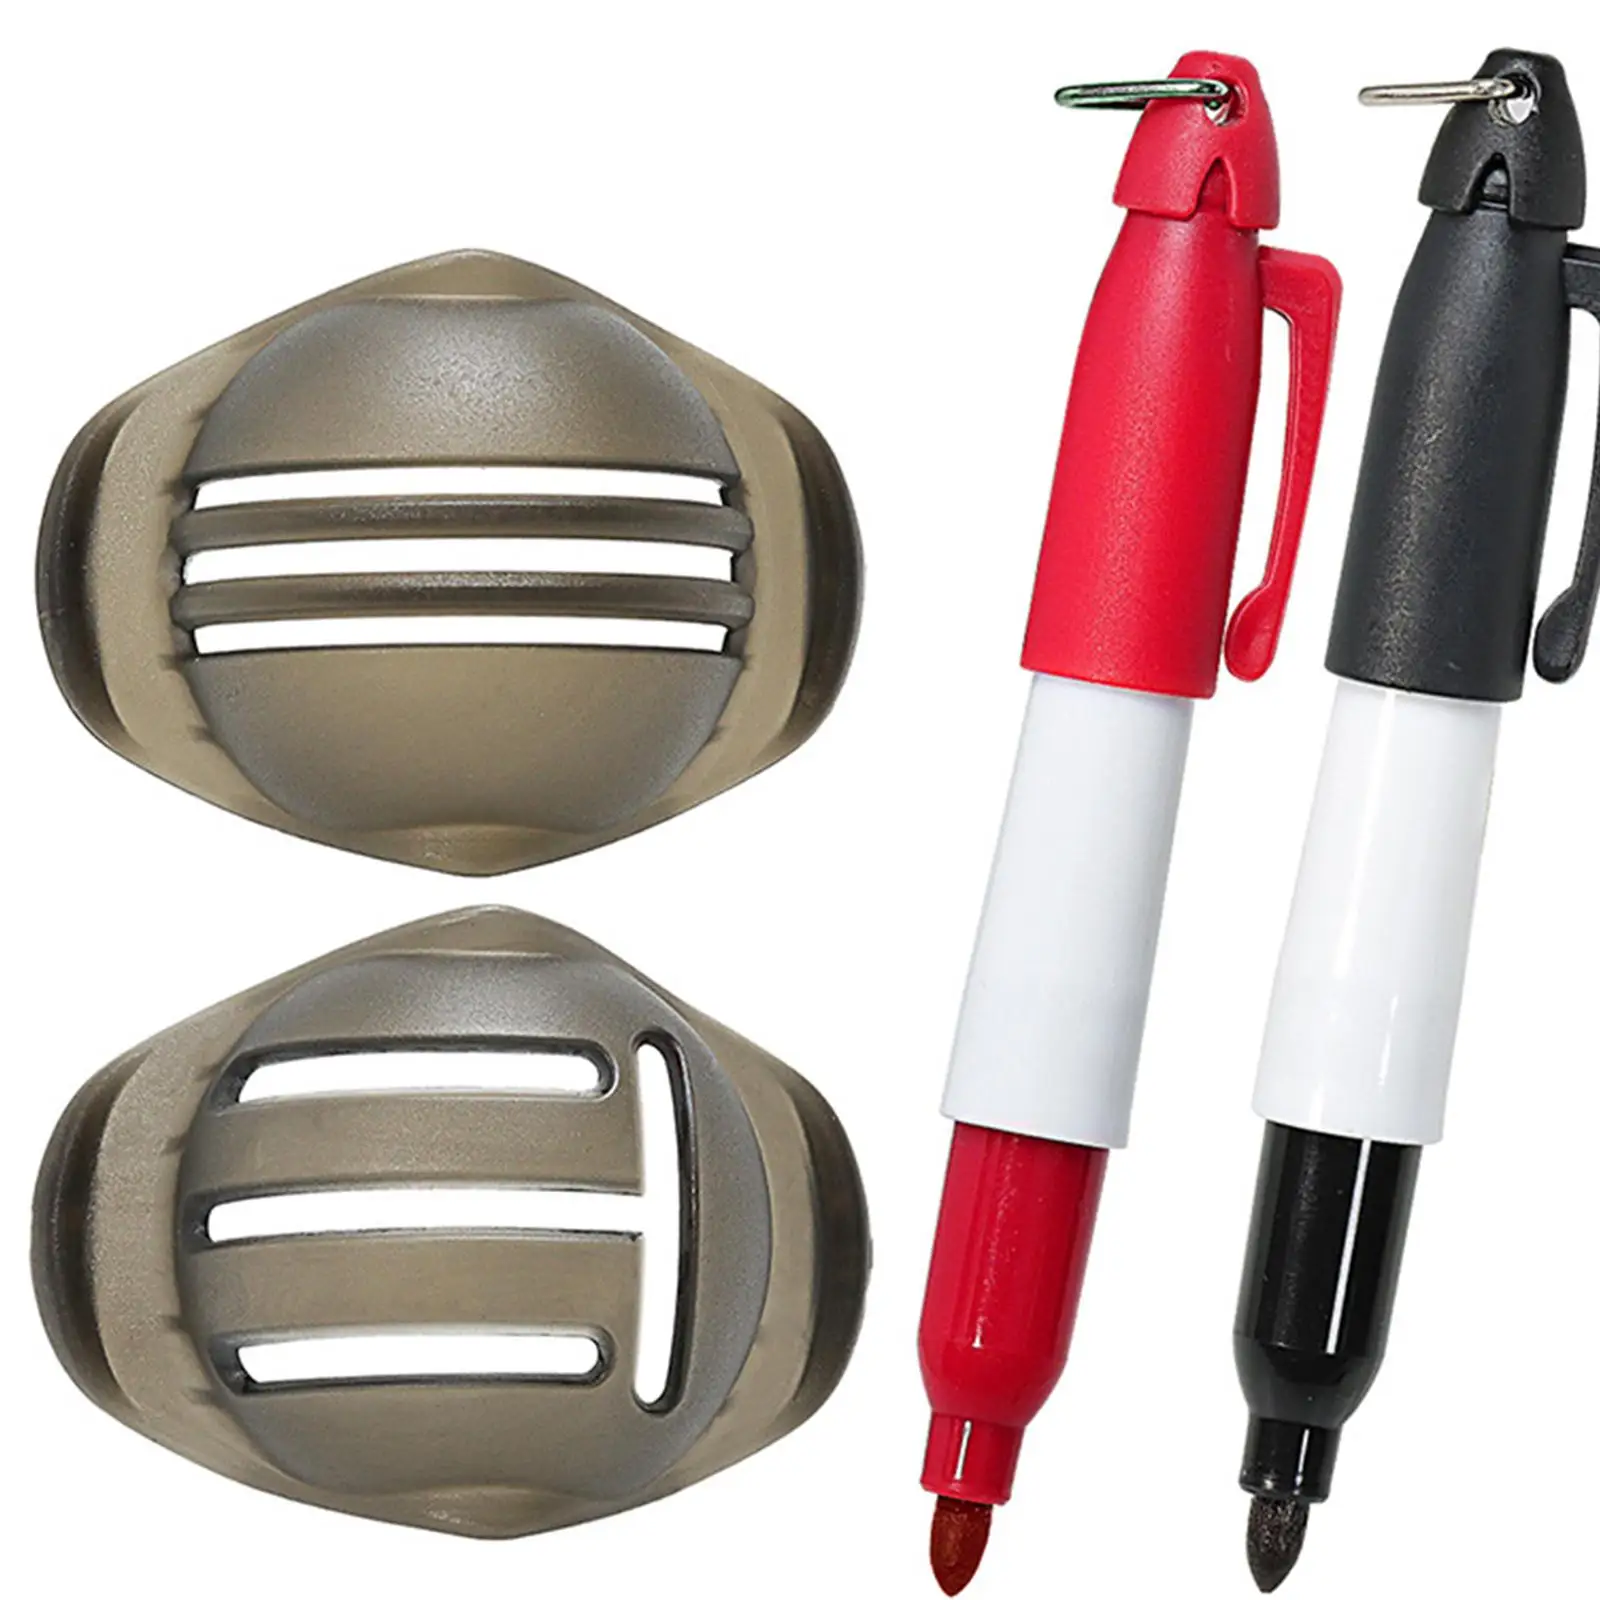 2x Golf Ball Marker Set Putter Putting Golf Ball Alignment Tool for Gift Men